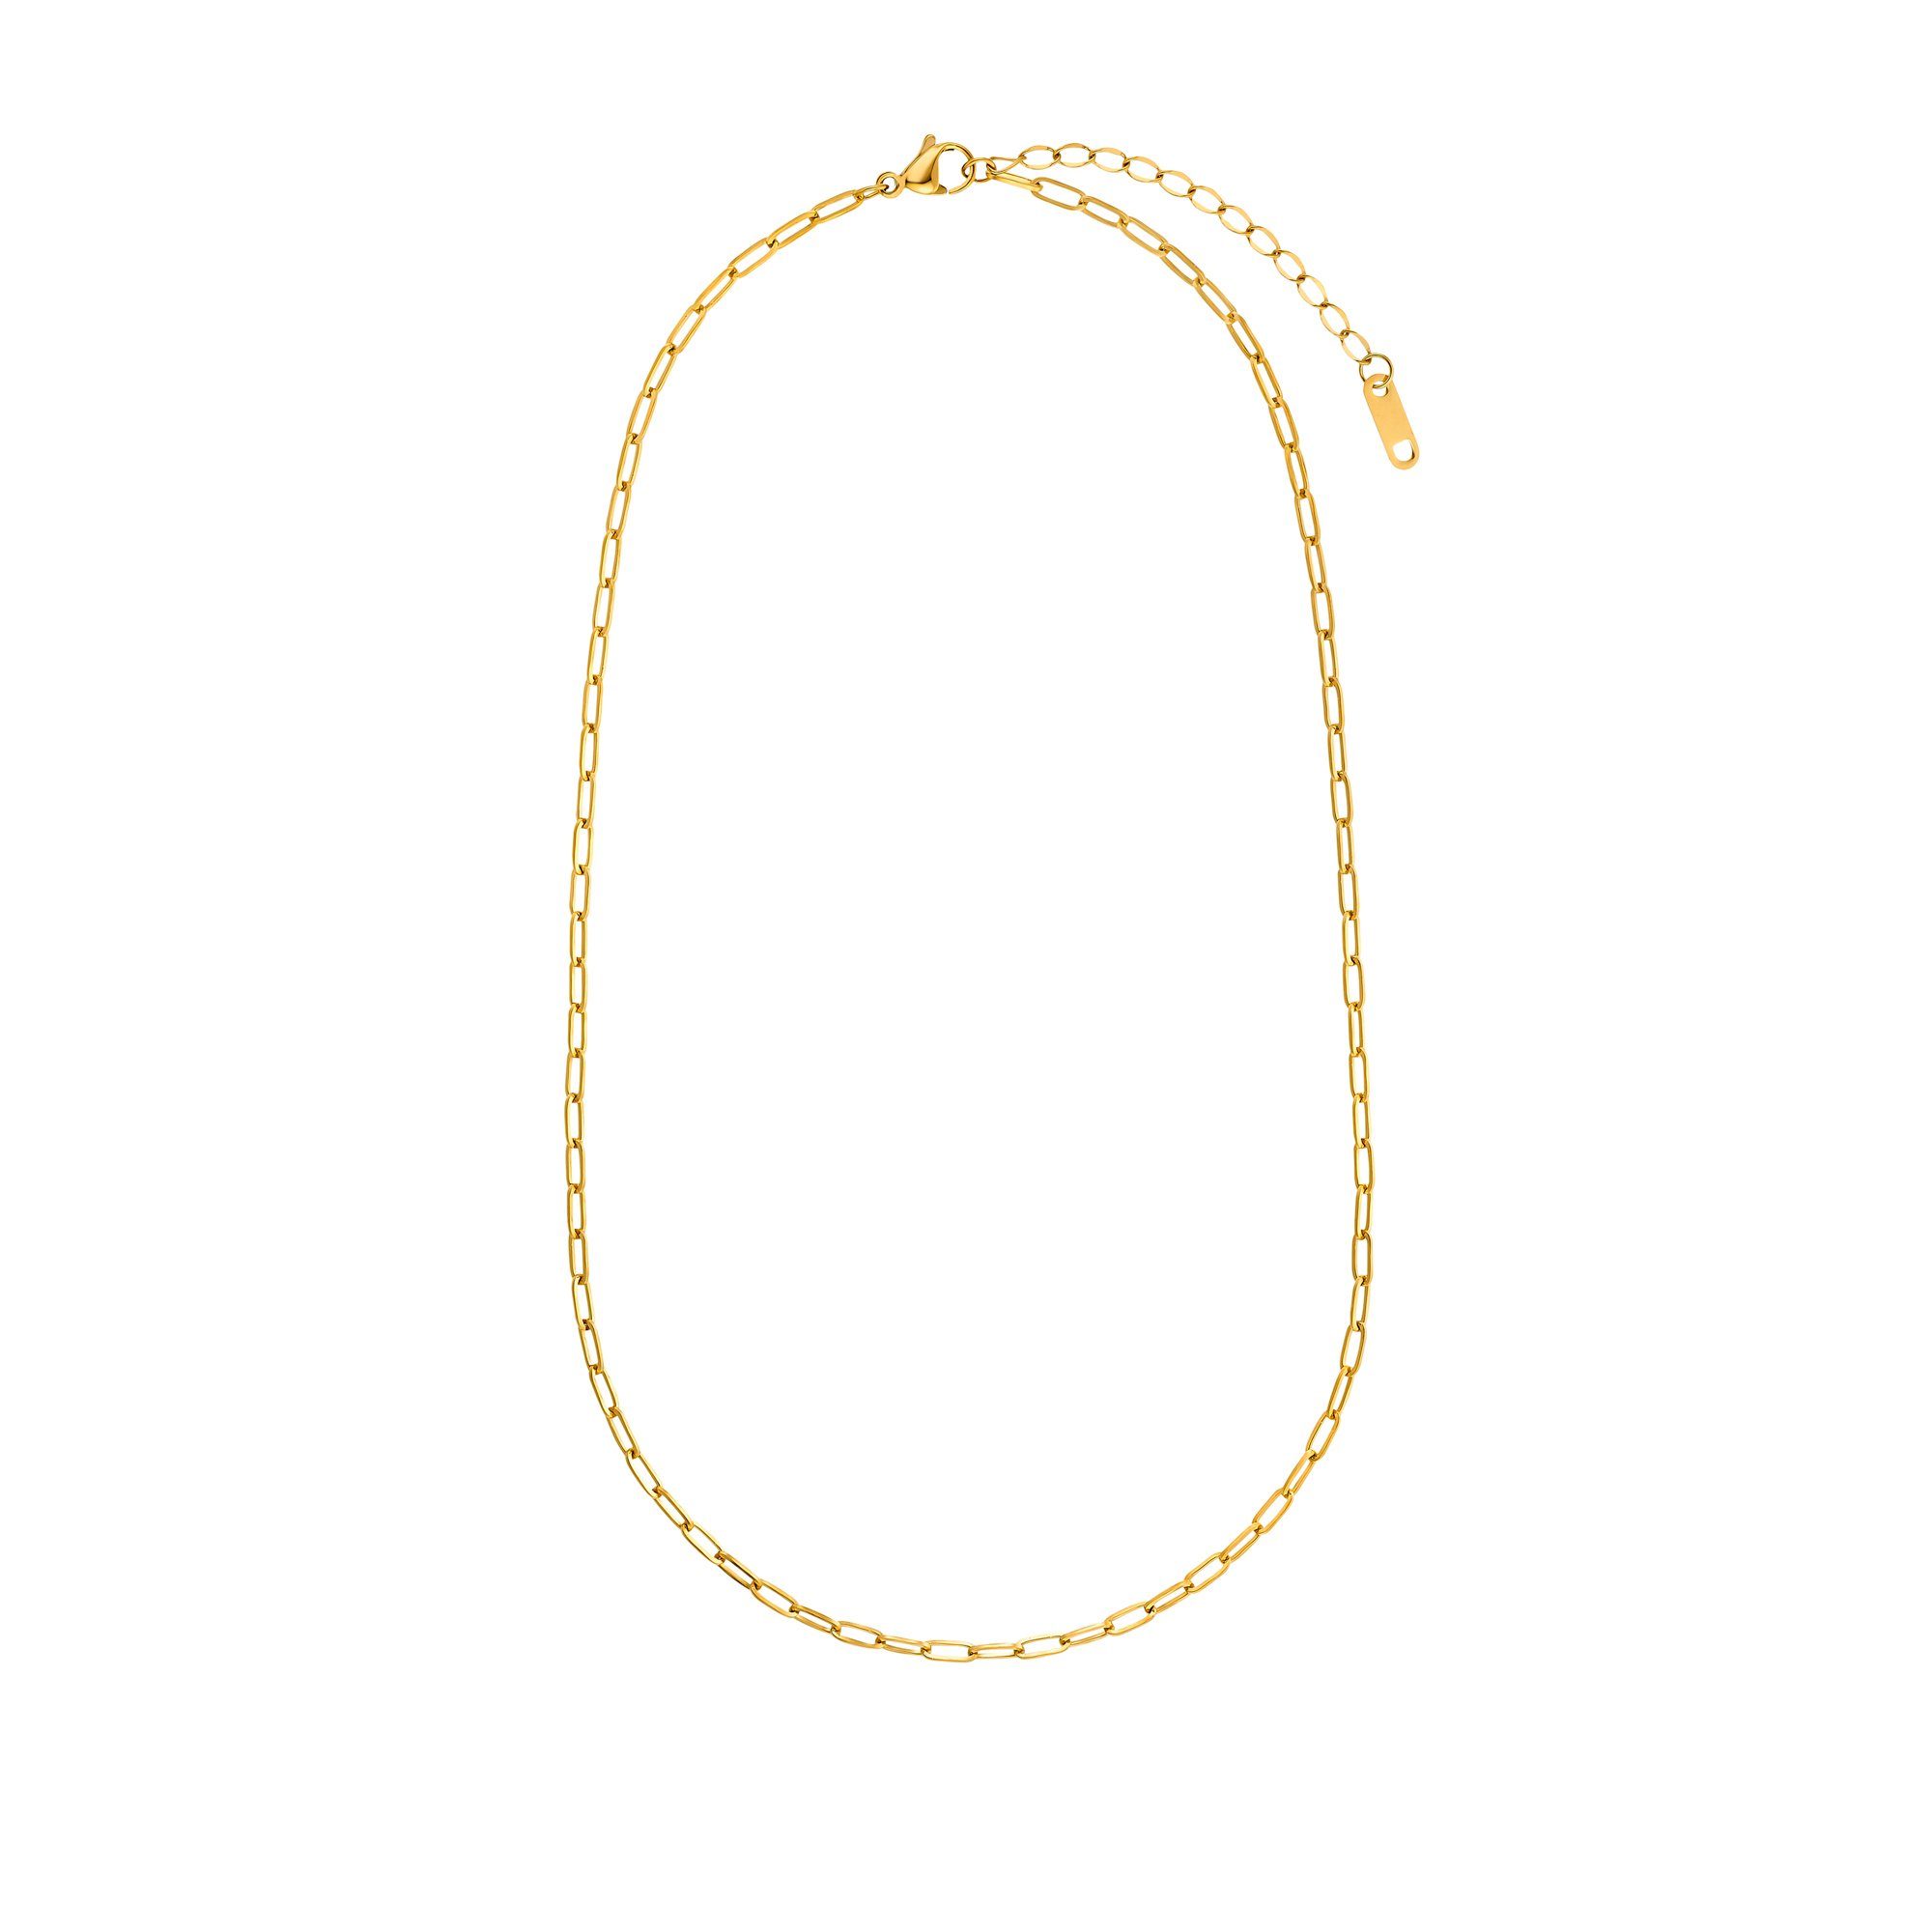 Heideman Collier Lana schwarz farben (inkl. Geschenkverpackung), Halskette für Frauen goldfarben